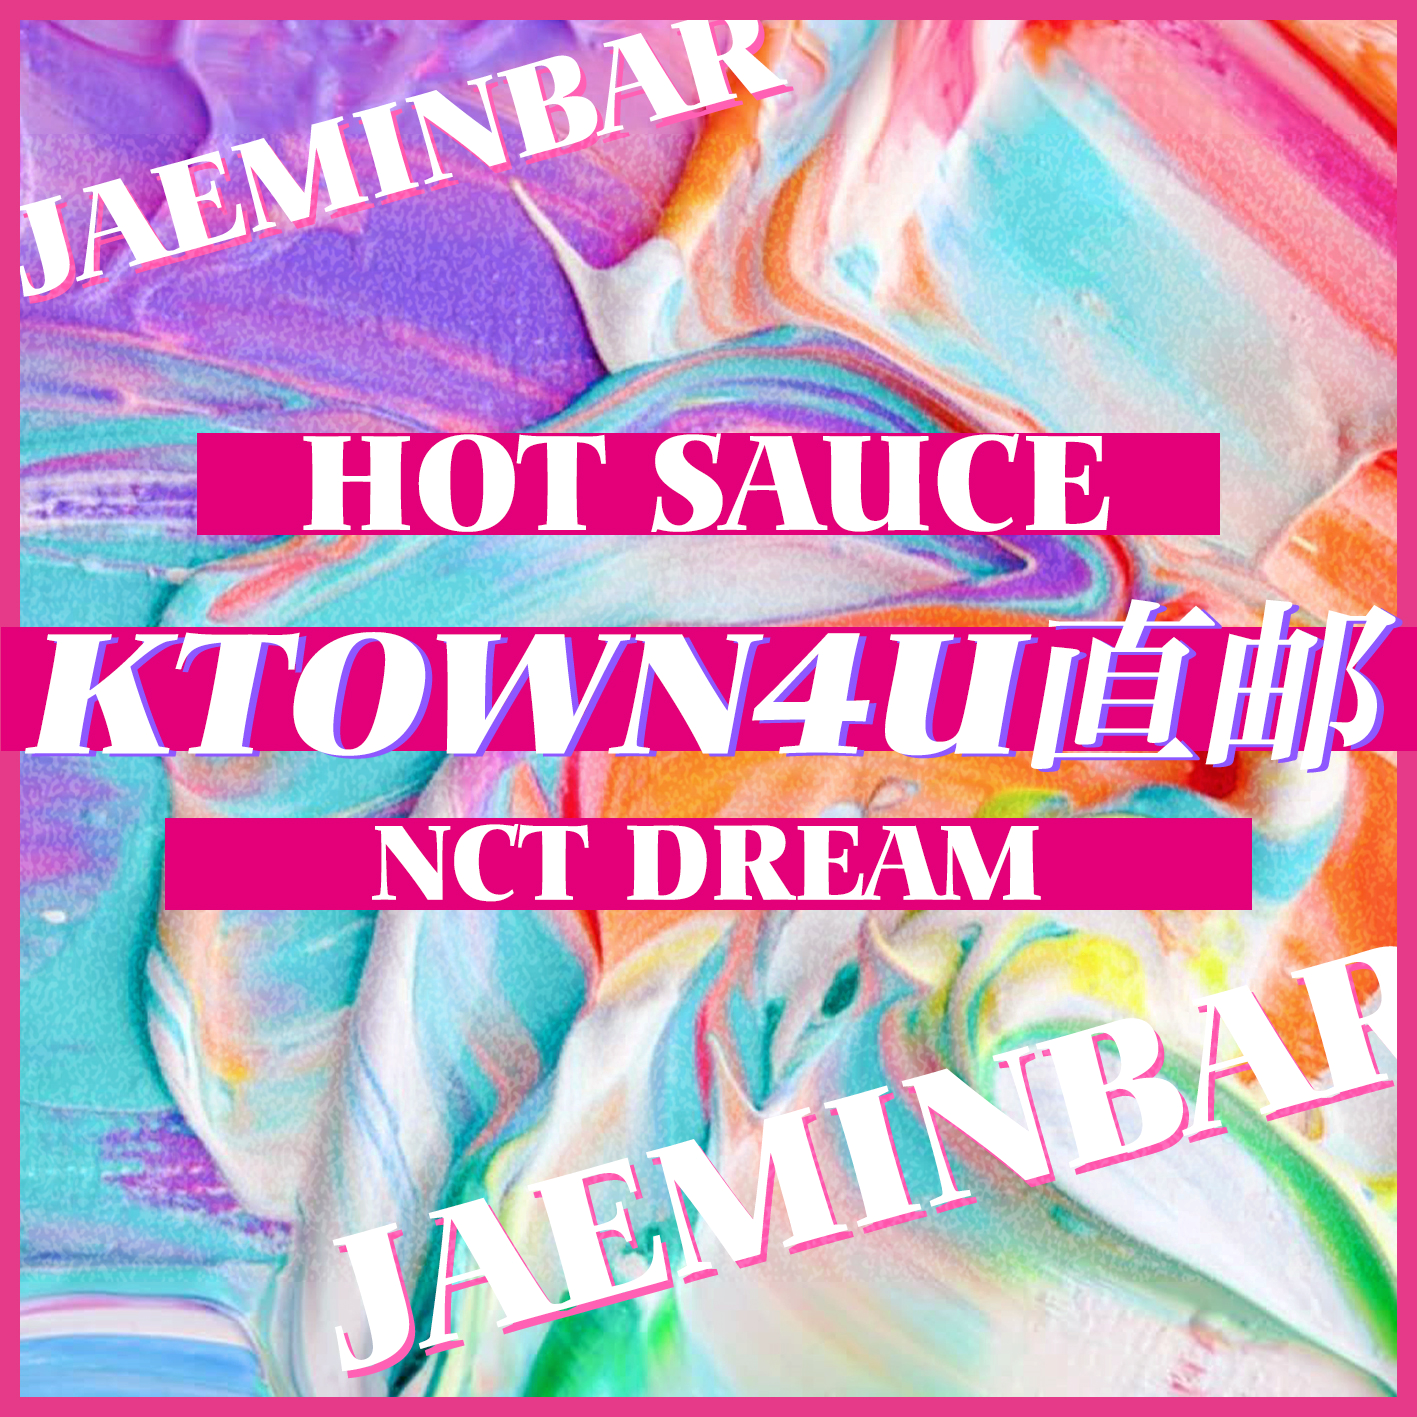 [全款 裸专] NCT DREAM - Album Vol.1 [맛 (Hot Sauce)] (写真集版本) (随机版本) (*购买2张或以上是会提供不同版本)_罗渽民吧_JAEMINbar